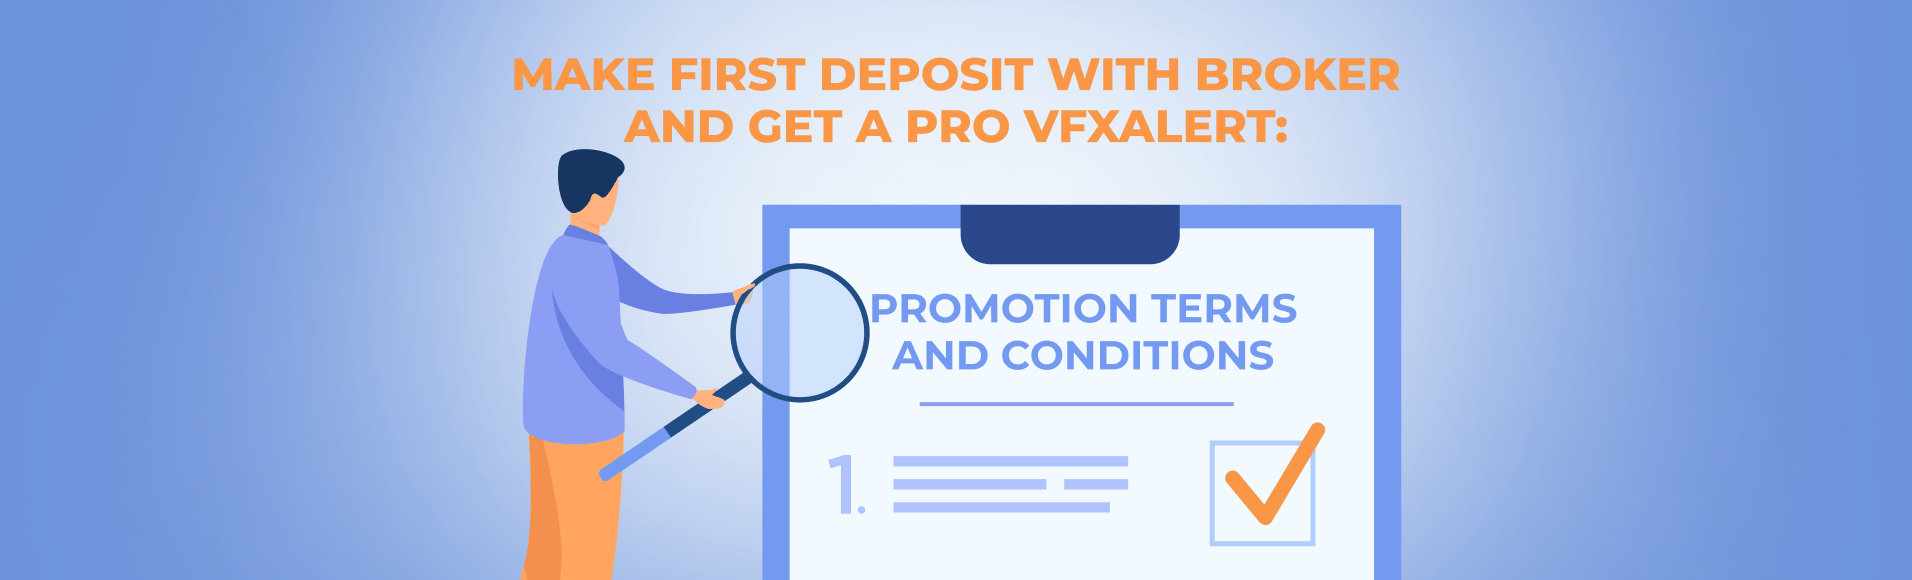 Buat deposit Pertama dengan broker dan Dapatkan PRO vfxAlert: Terma dan Syarat Promosi.